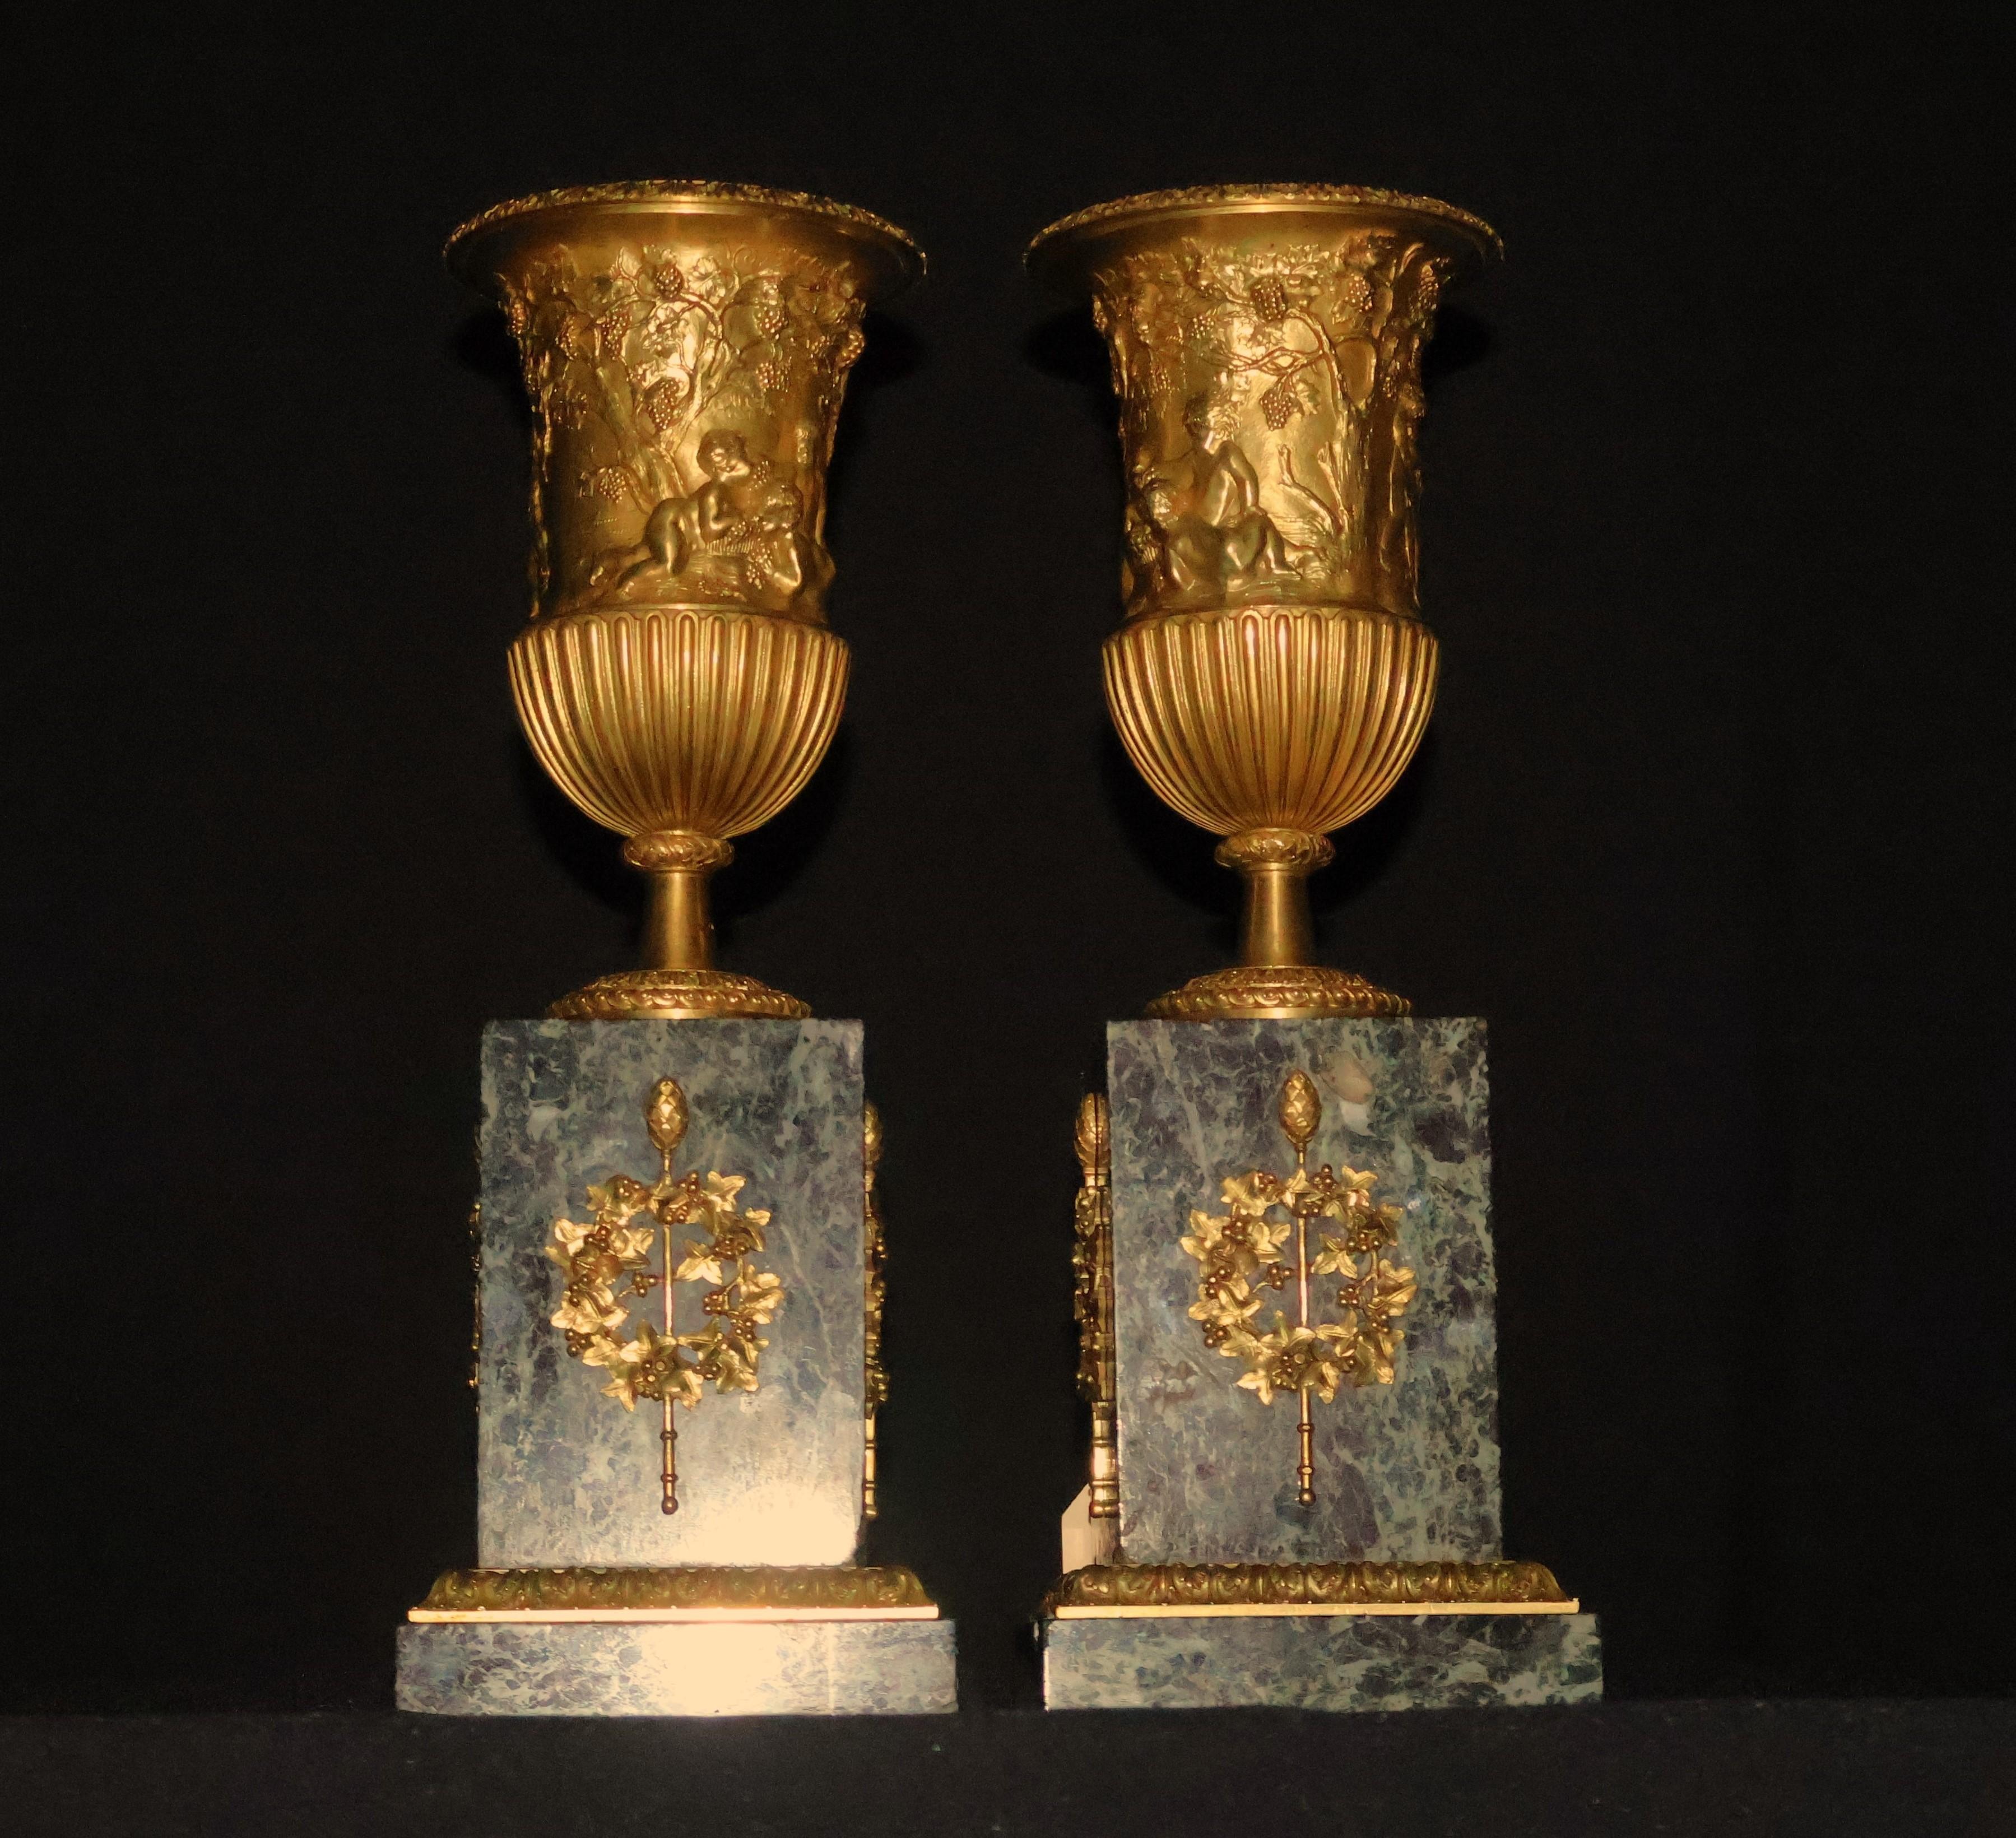 Zwei Urnen aus vergoldeter Bronze auf einem Marmorsockel mit Ormolu-Beschlägen (CW5595). Die Qualität ist hervorragend, die Verfolgung ist 10 auf 10. Frankreich, um 1870. Abmessungen: Höhe 15 1/2